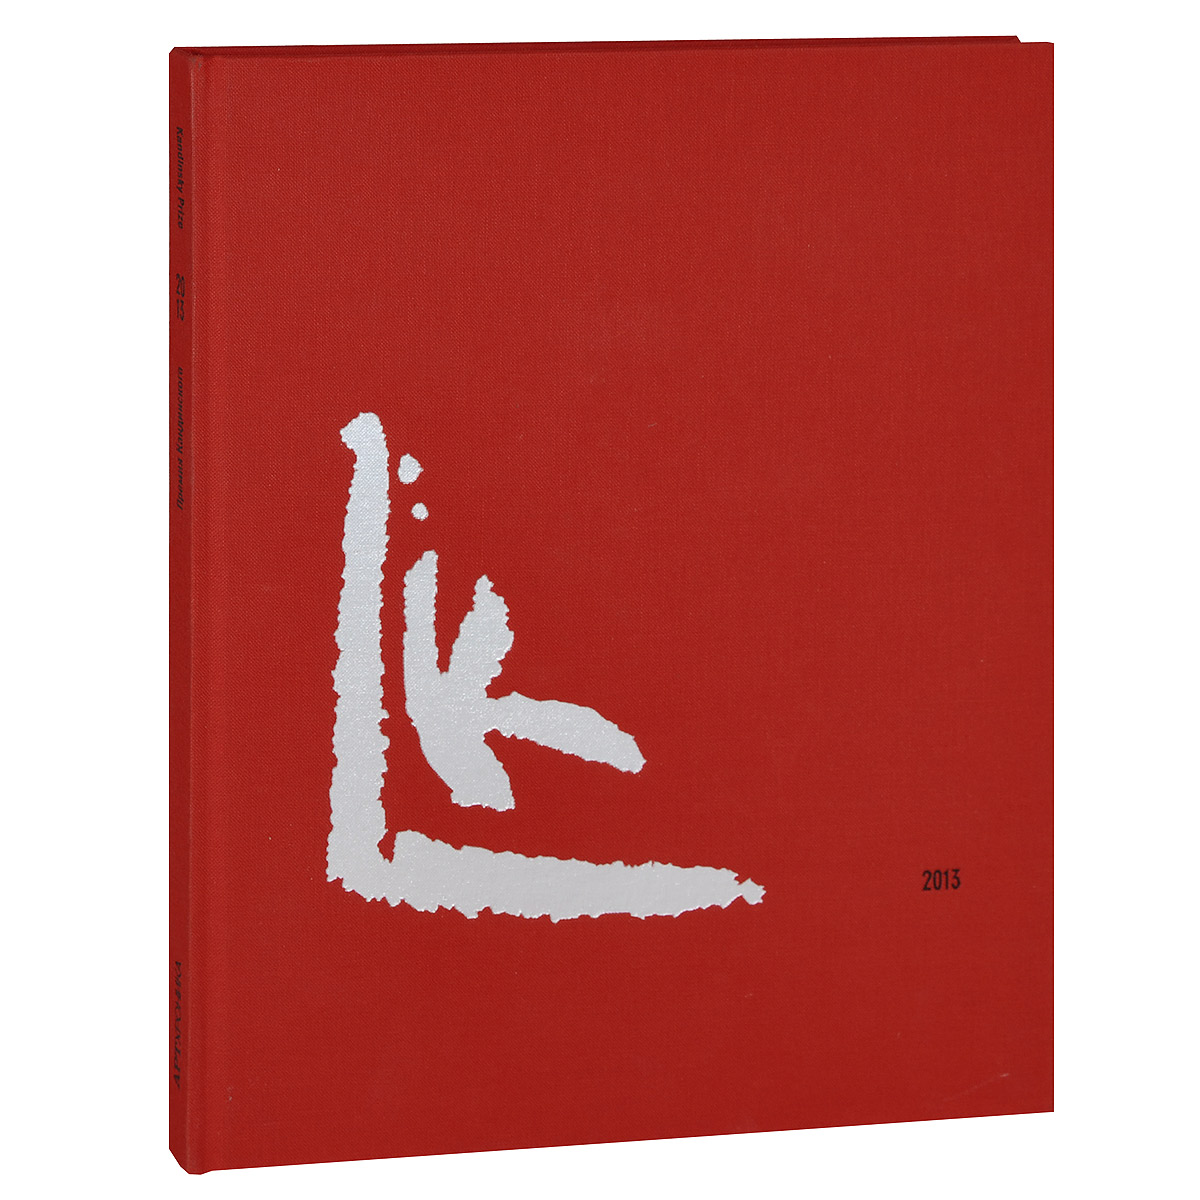 Премия Кандинского. Выставка номинантов. Каталог / Kandinsky Prize: Exhibition of the Nominees: Catalogue